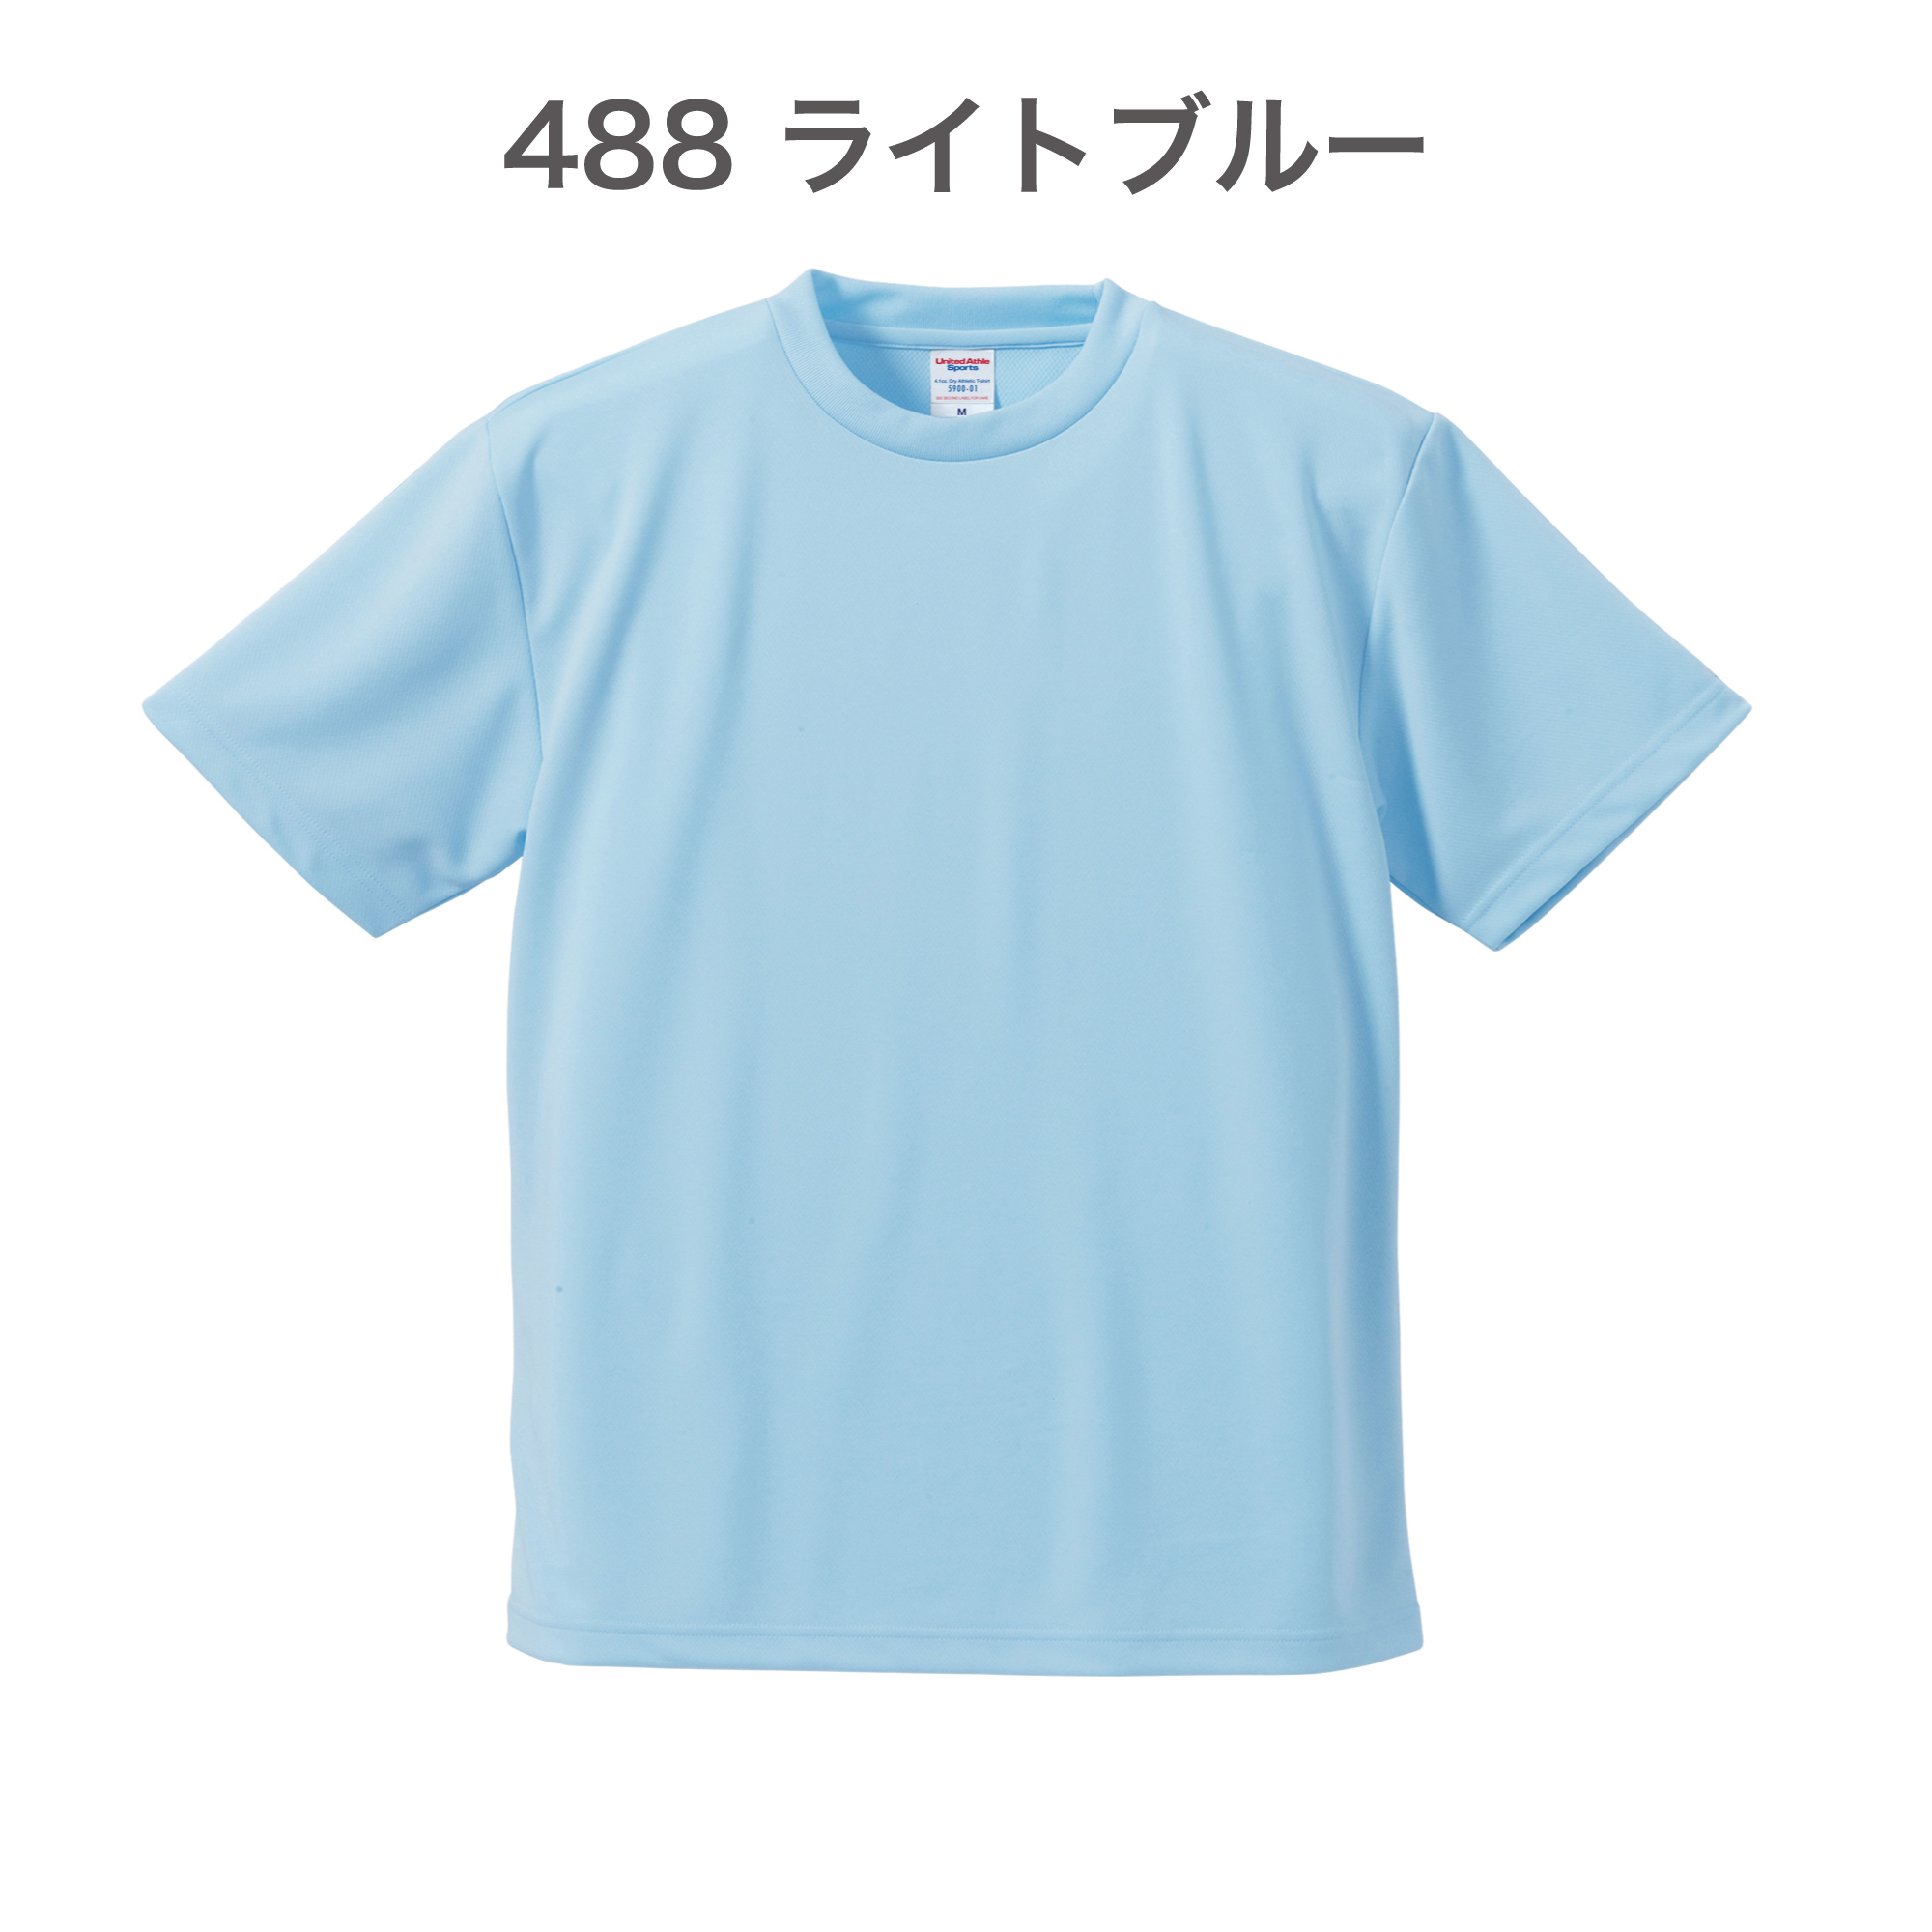 488-ライトブルー